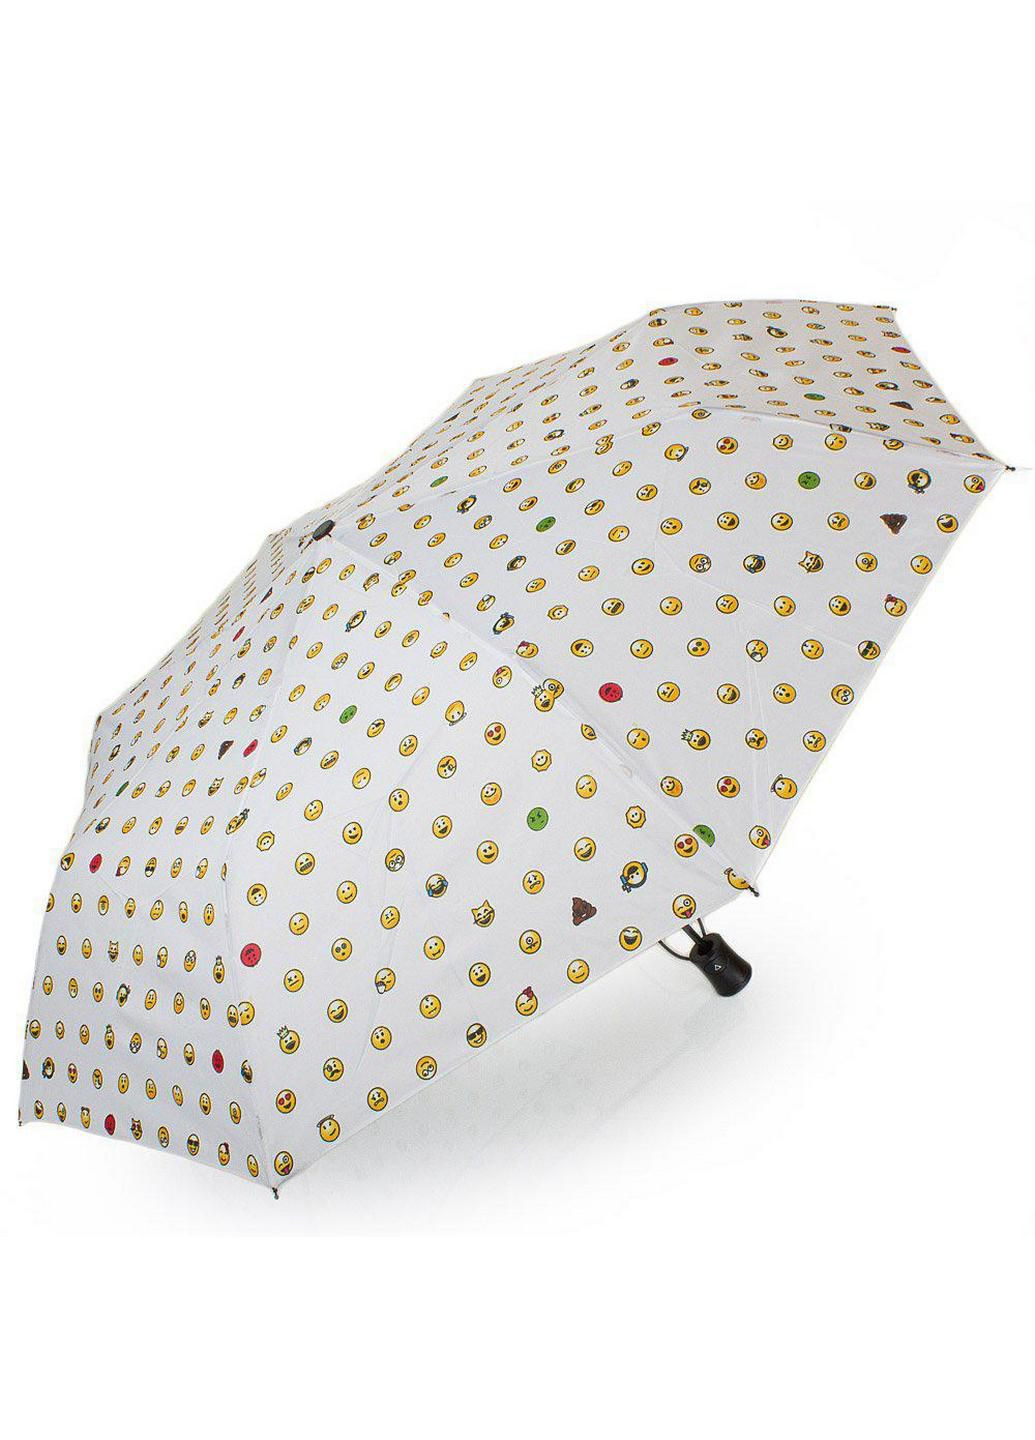 Складной зонт полуавтомат 97 см Happy Rain (197766163)